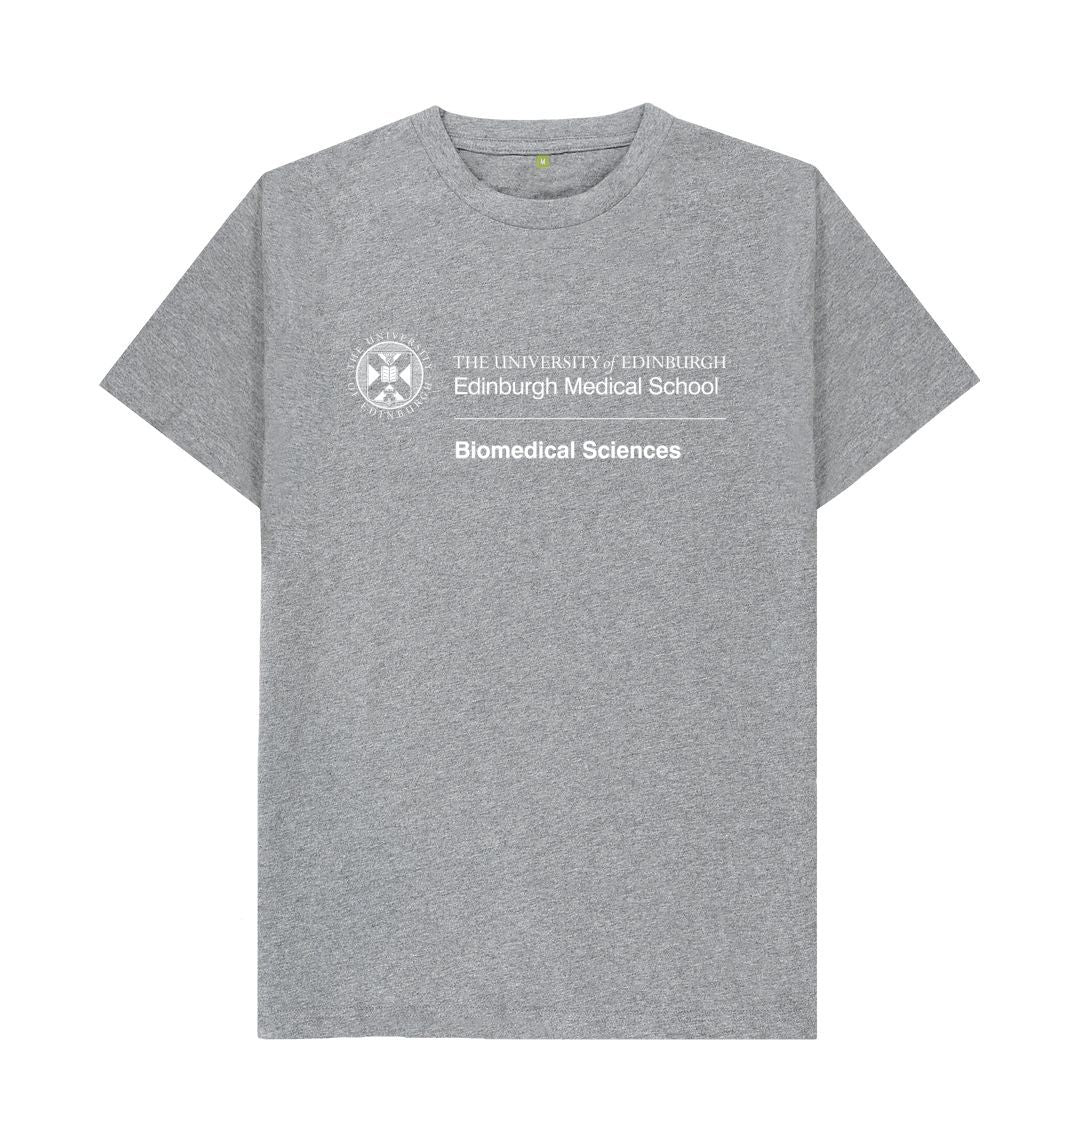 Athletic Grey Edinburgh Medical School - Biomedical Sciences T-Shirt